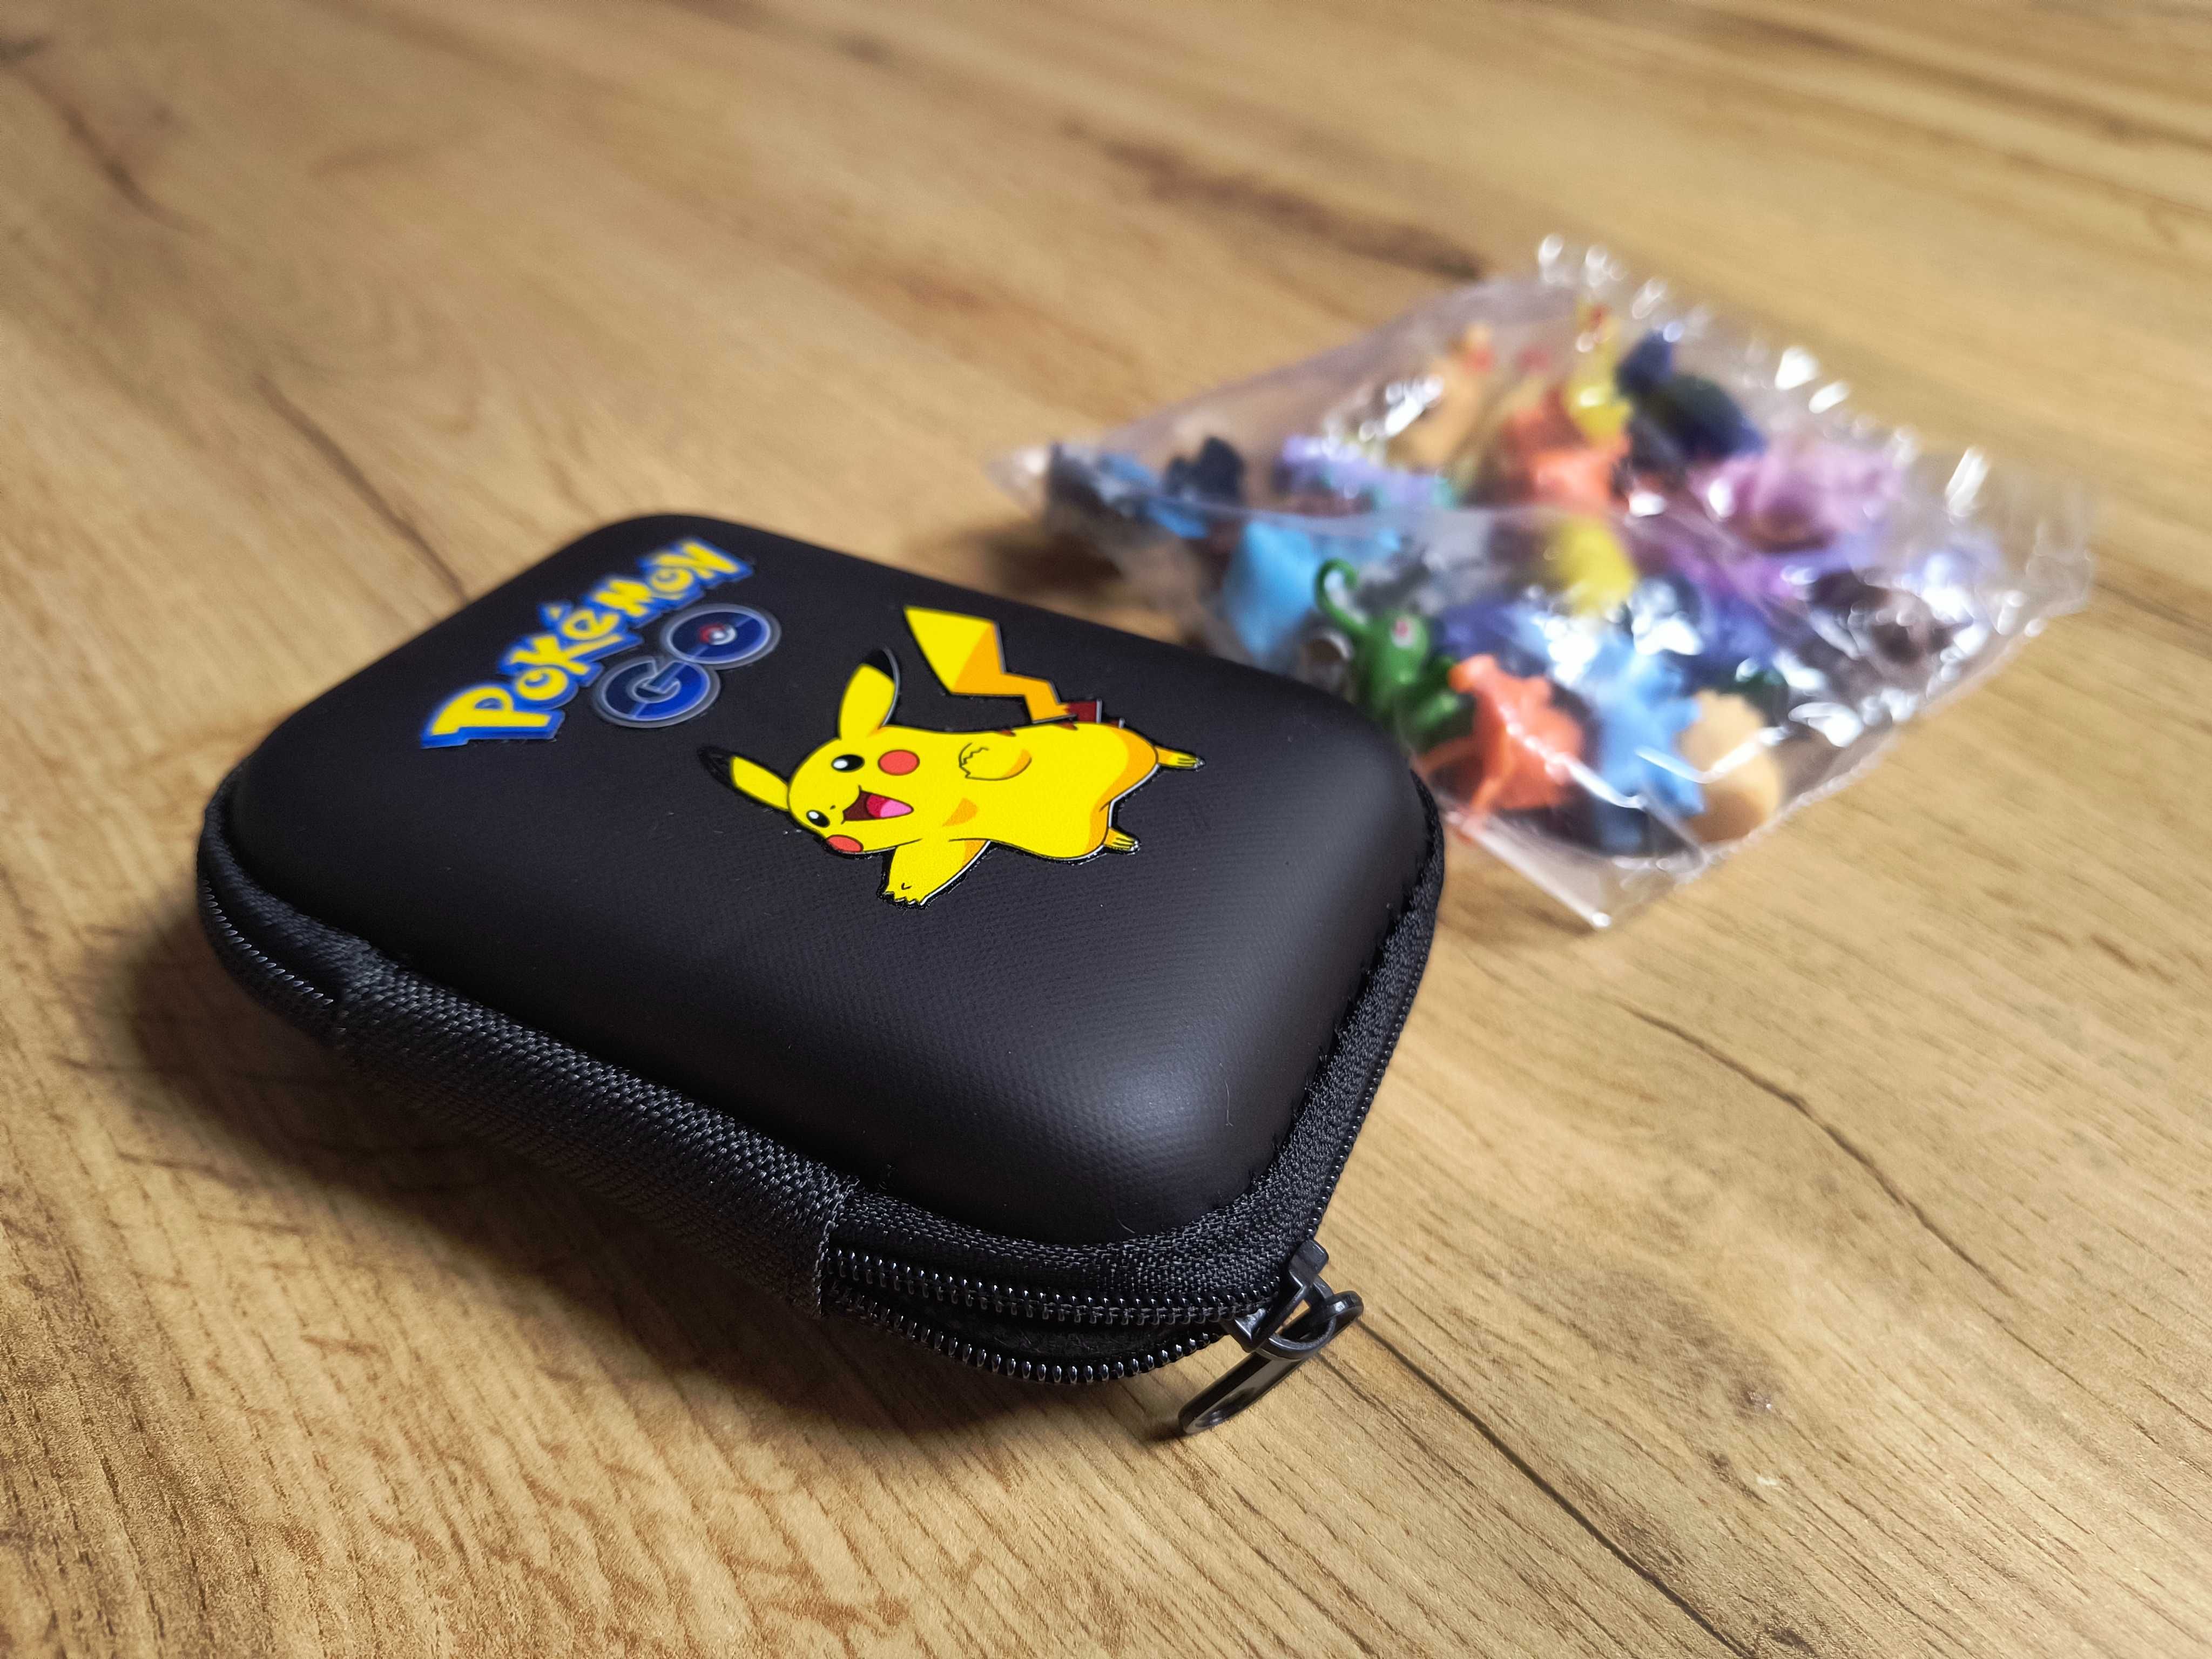 24 szt figurek Pokemon Pikachu + Etui na figurki lub karty